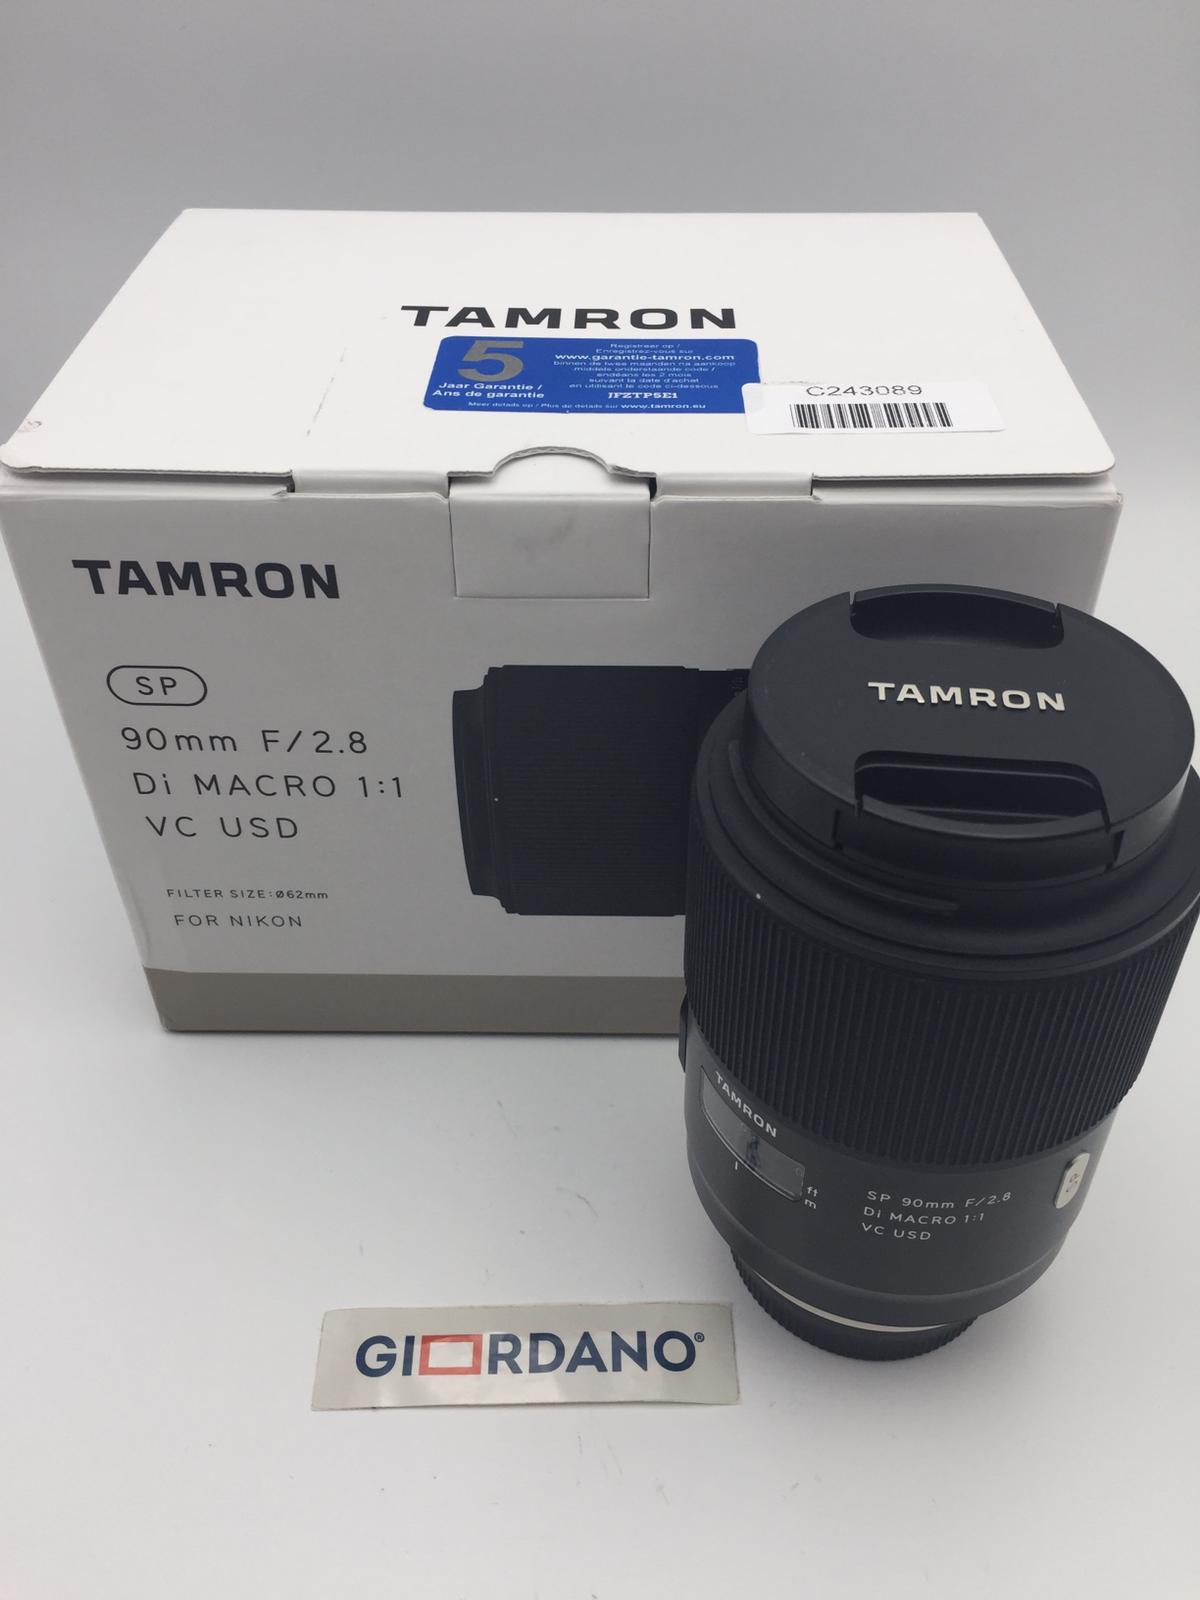 [Demo] Tamron Obiettivo SP 90mm f/2.8 Di Macro VC USD per Nikon Reflex